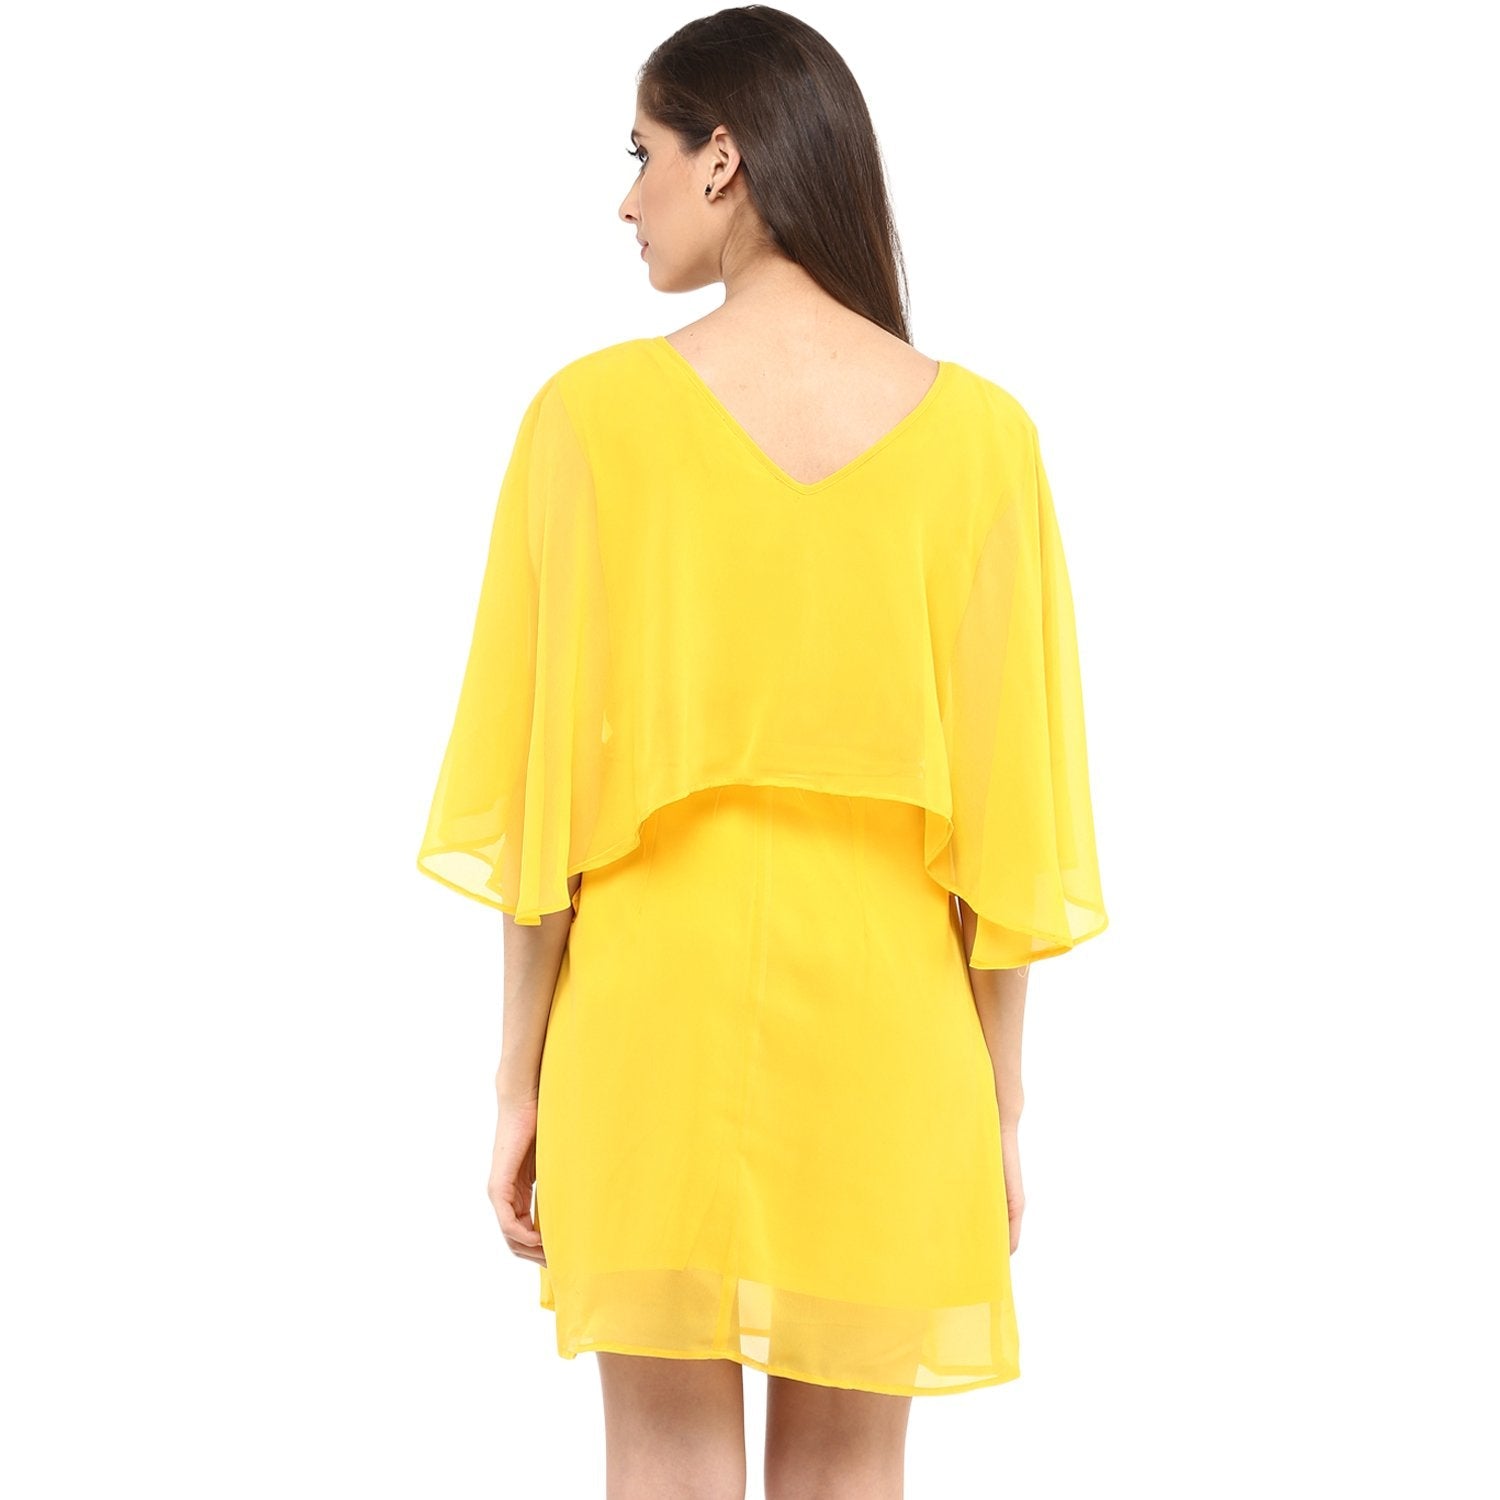 Women's Solid Cape Design Dress - Pannkh